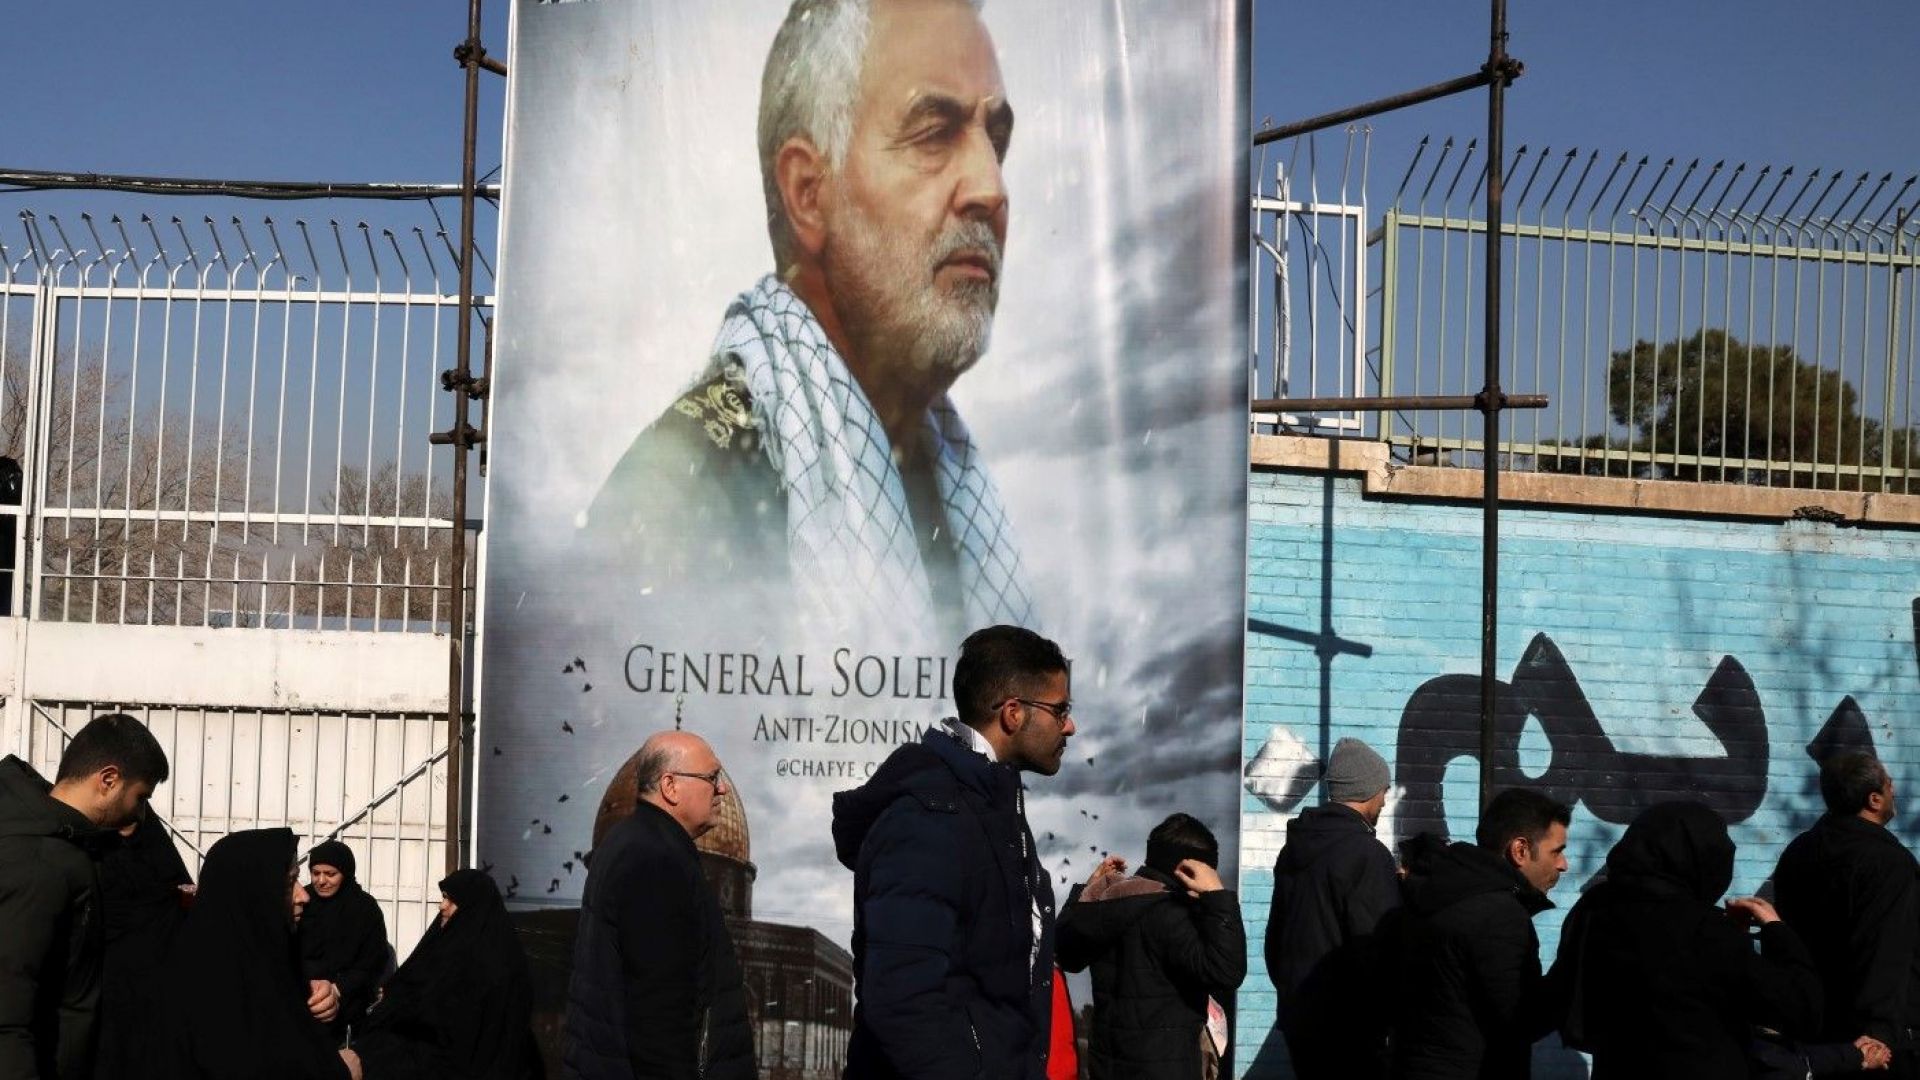 Нов ирански генерал излезе от сянката, за да оглави елитните